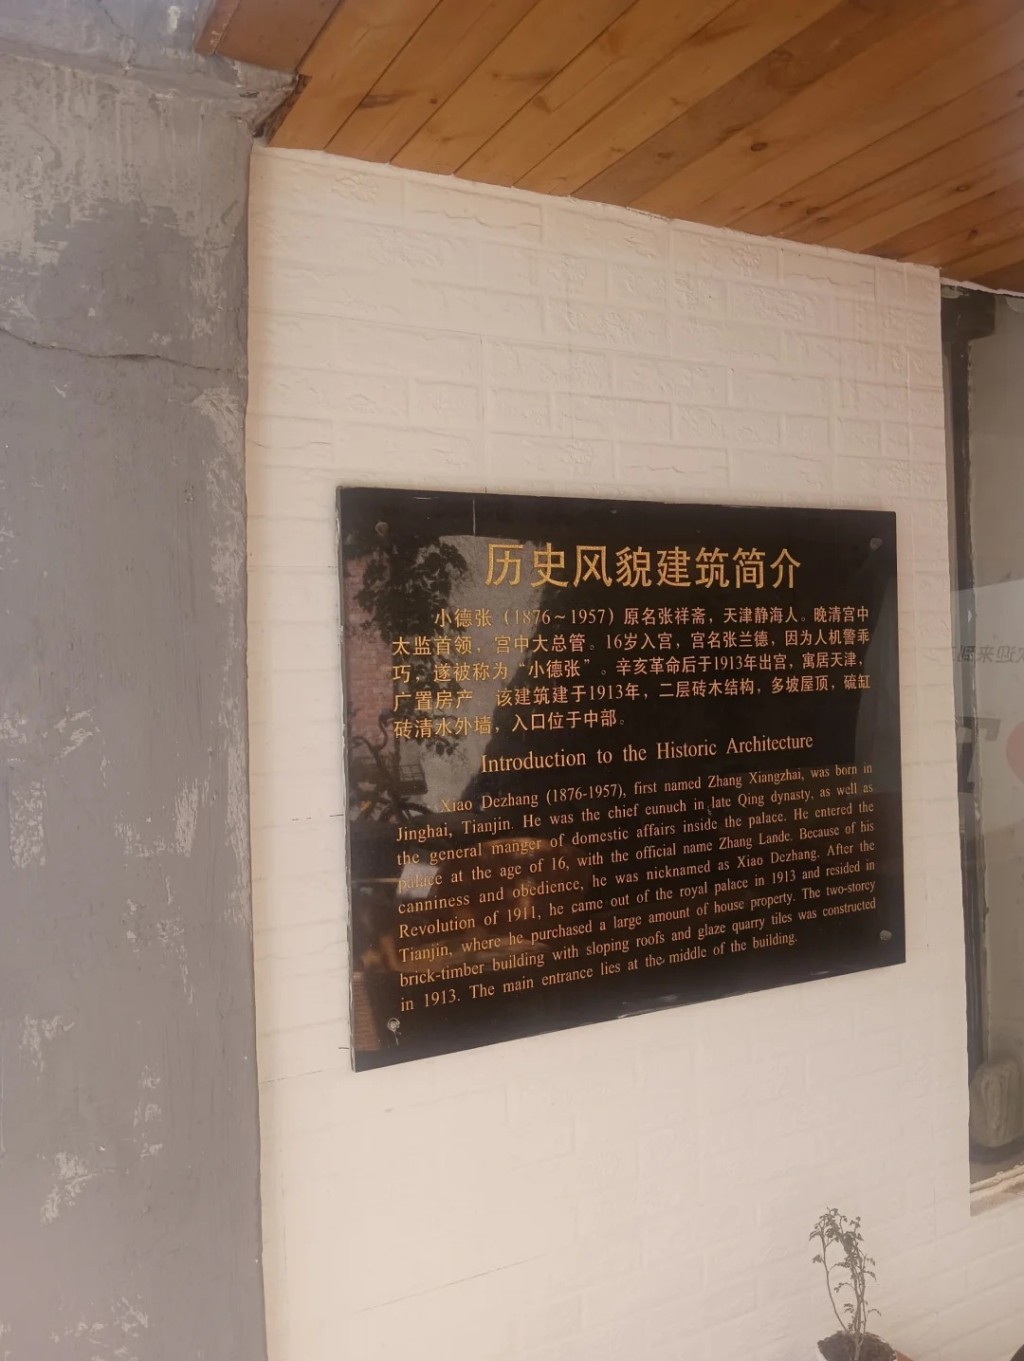 小德张人生最后阶段居于天津金林村四号的洋楼。小红书